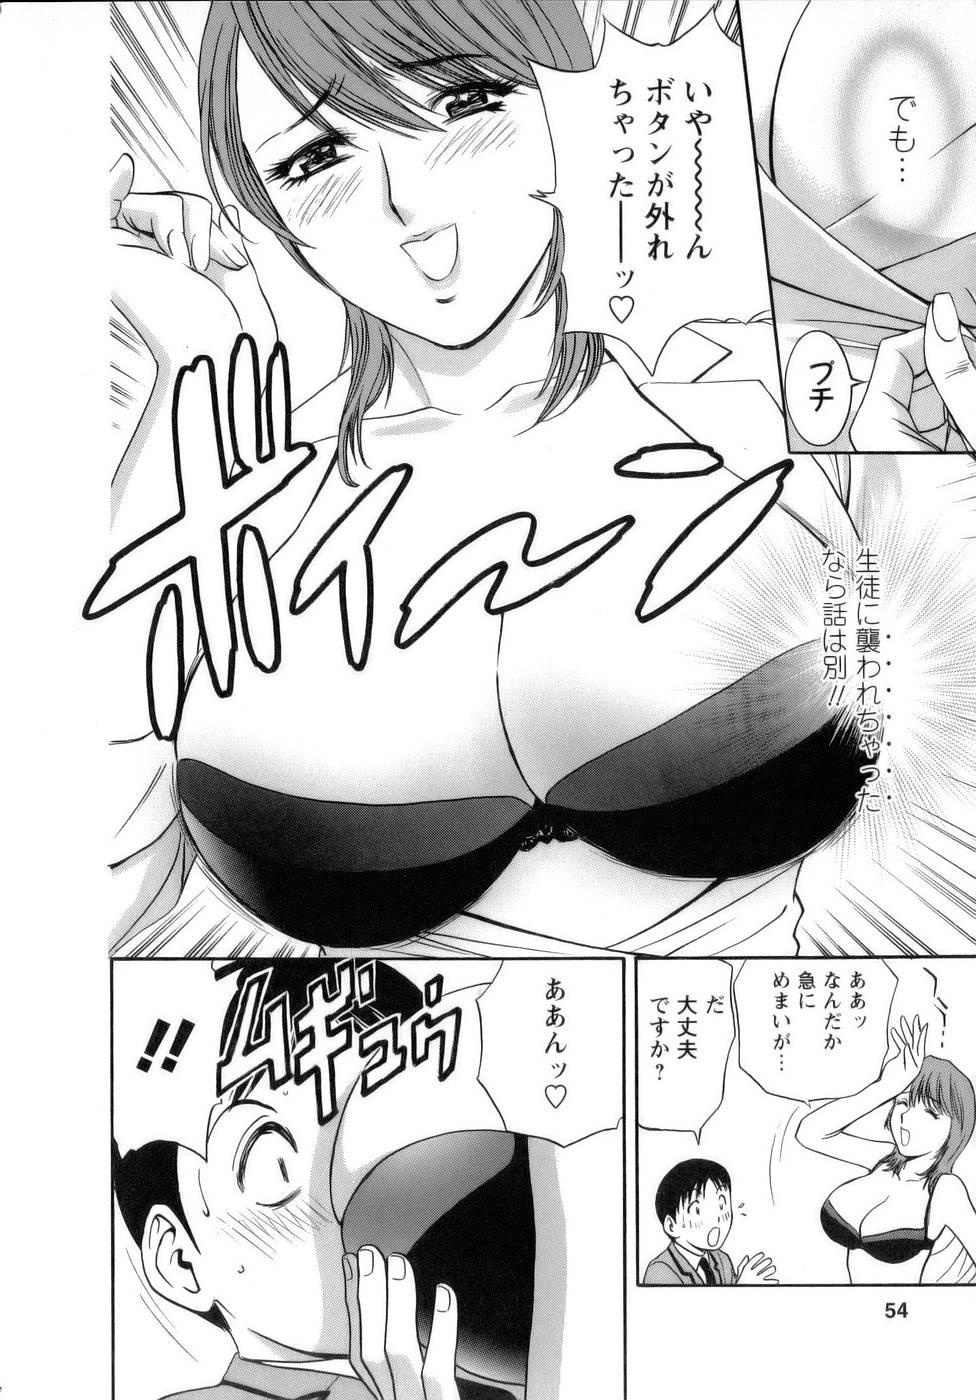 [Hidemaru] Mo-Retsu! Boin Sensei (Boing Boing Teacher) Vol.1 54